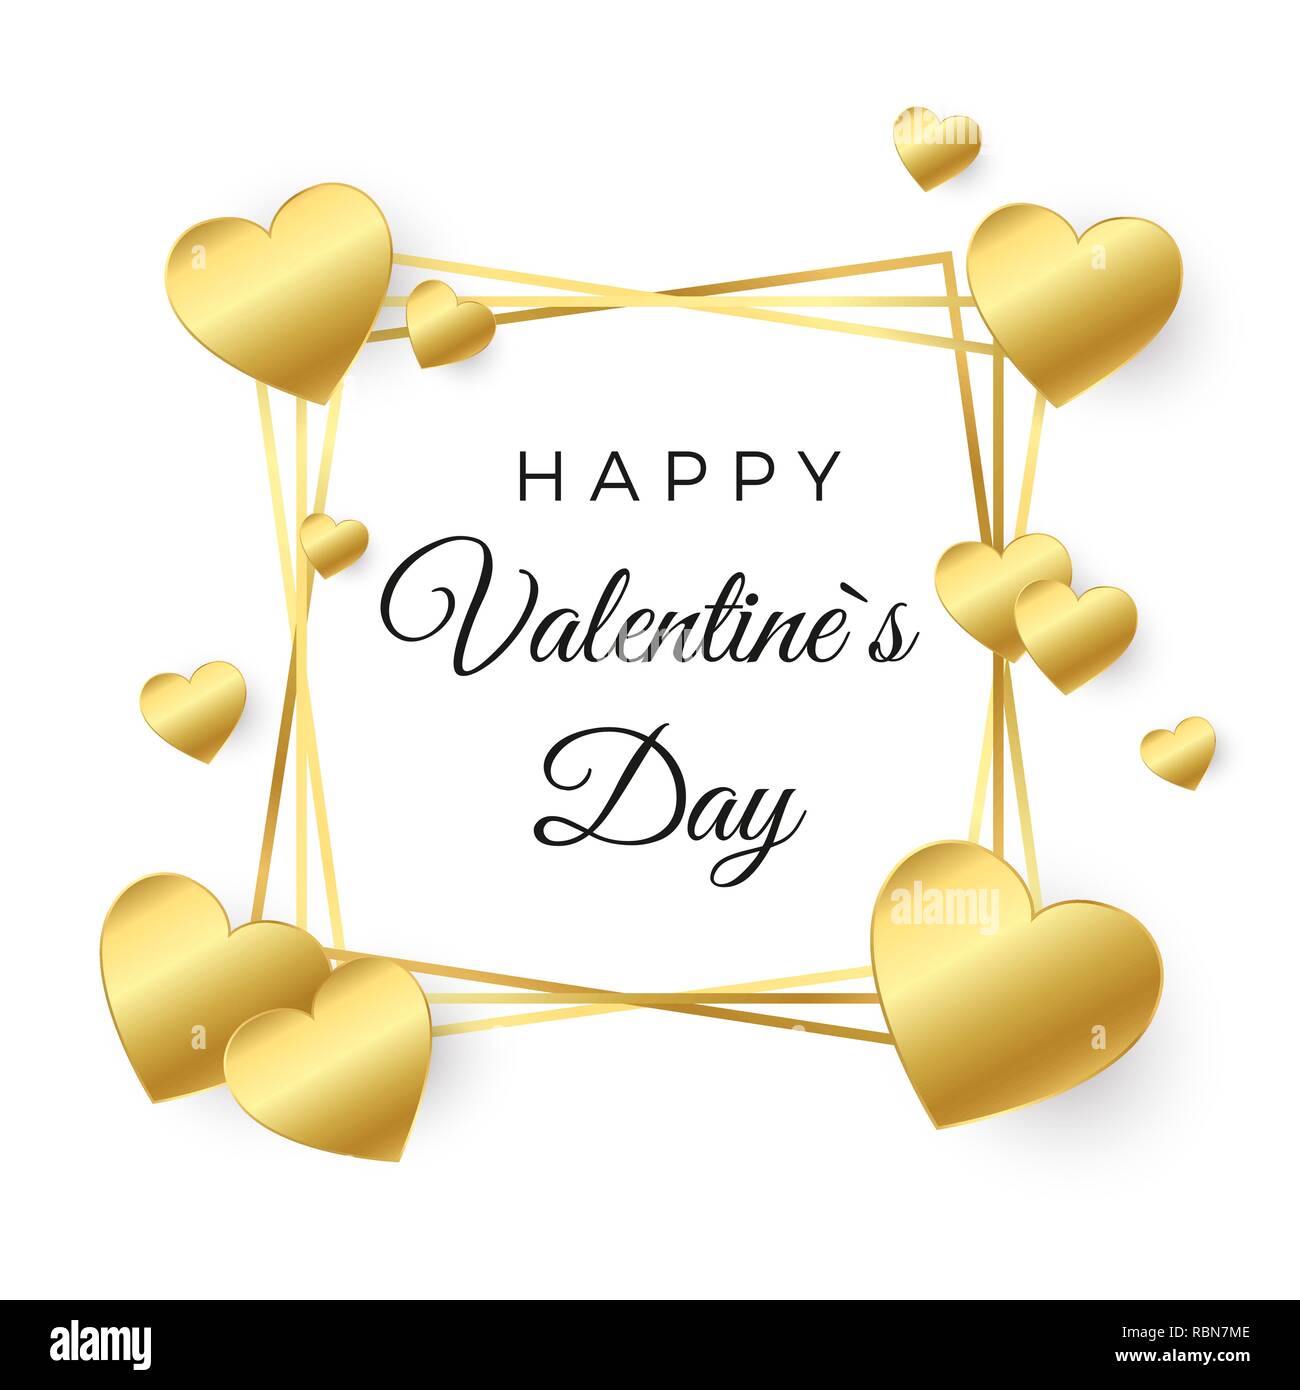 Happy Valentines Day carte de vœux. Coeur d'or et le châssis avec du texte sur fond blanc. Concept pour bannière Valentines. Vector illustration Illustration de Vecteur